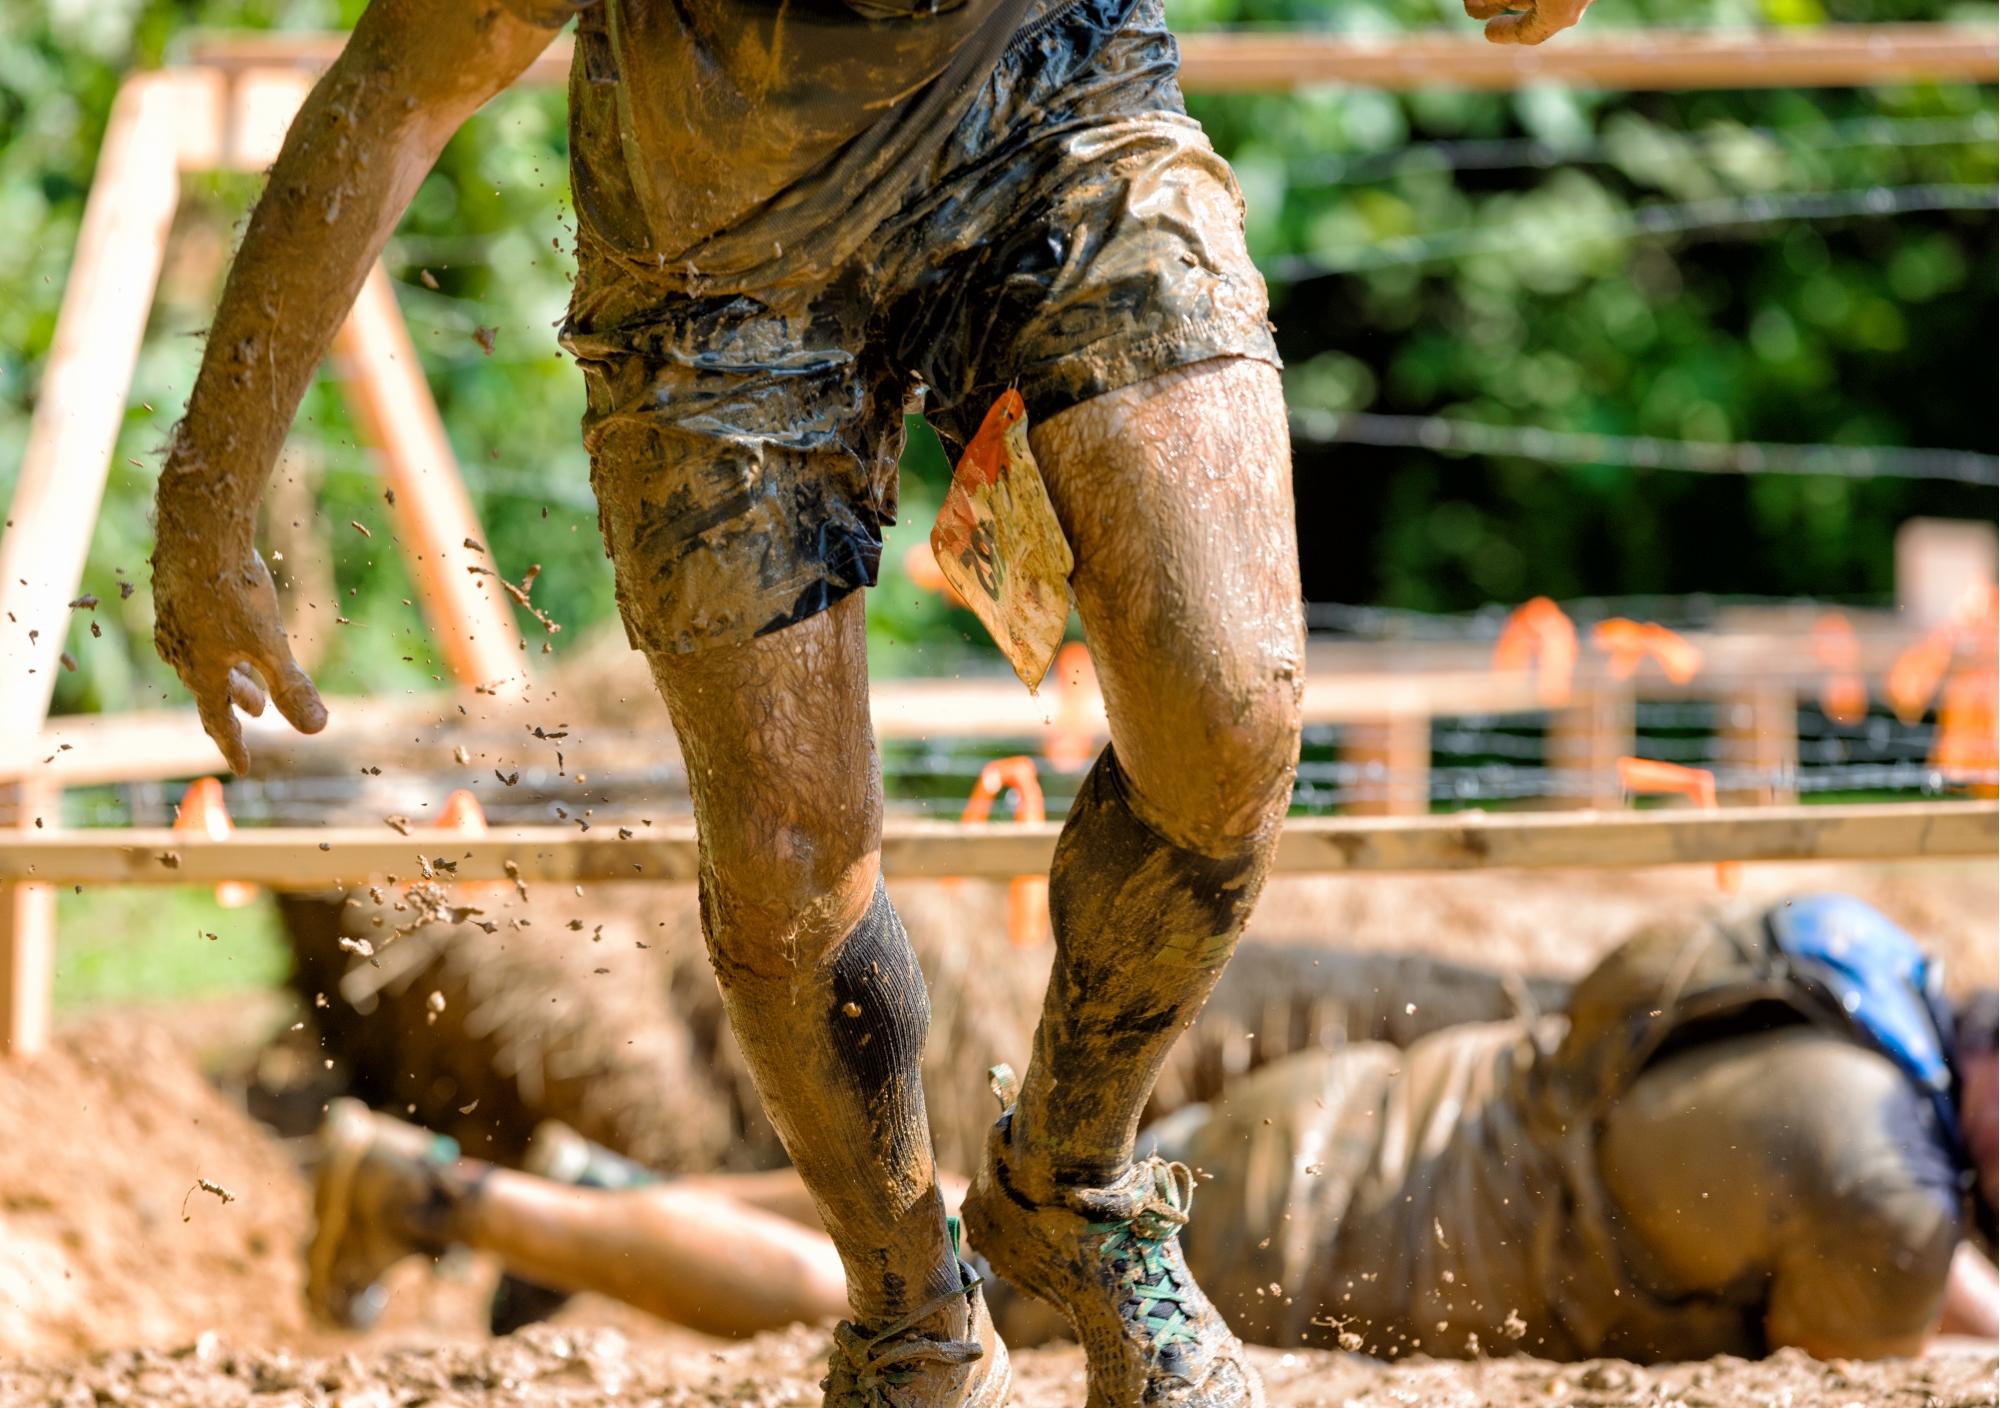 RaceThread.com: spartan vs. tough mudder - mud runs